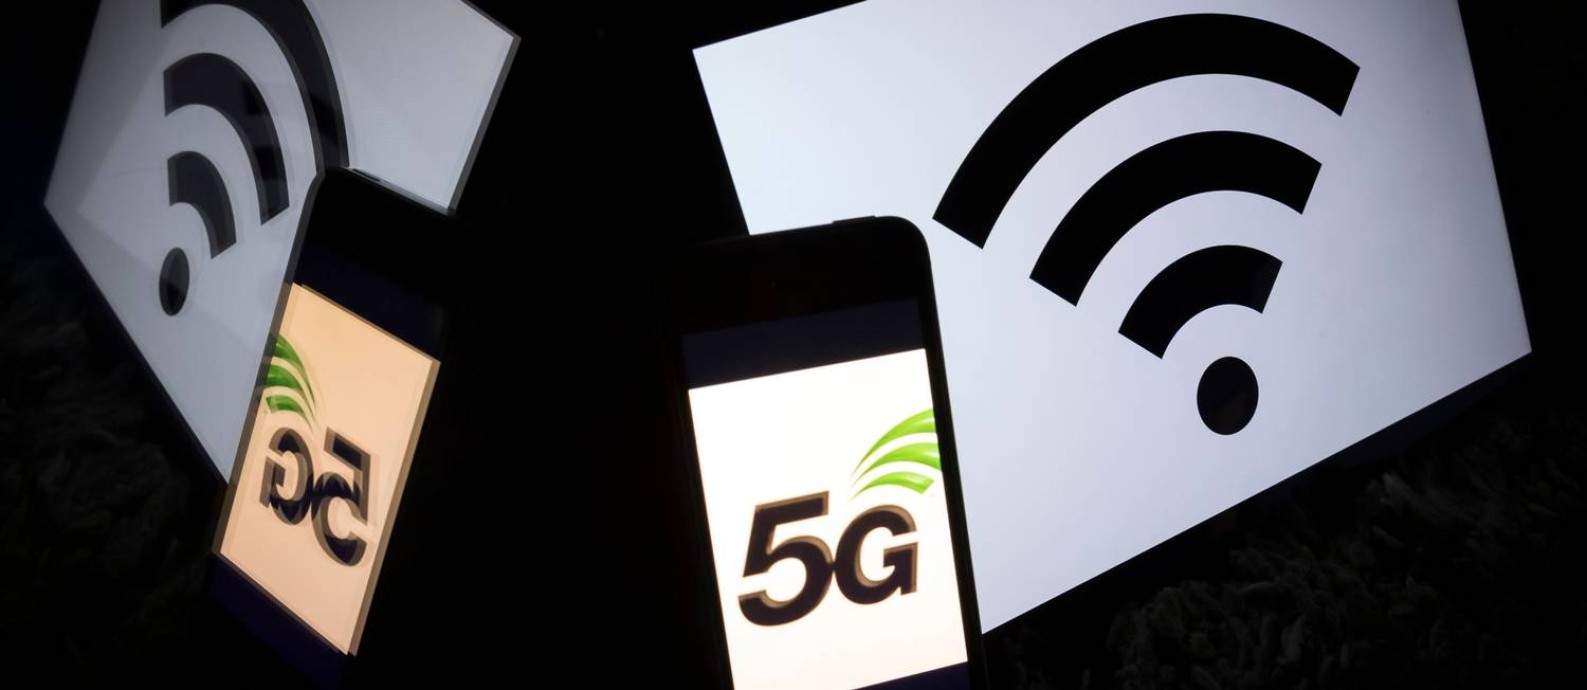 Rede 5G deve ser lançada comercialmente em São Paulo no Natal Foto: Lionel Bonaventure / AFP